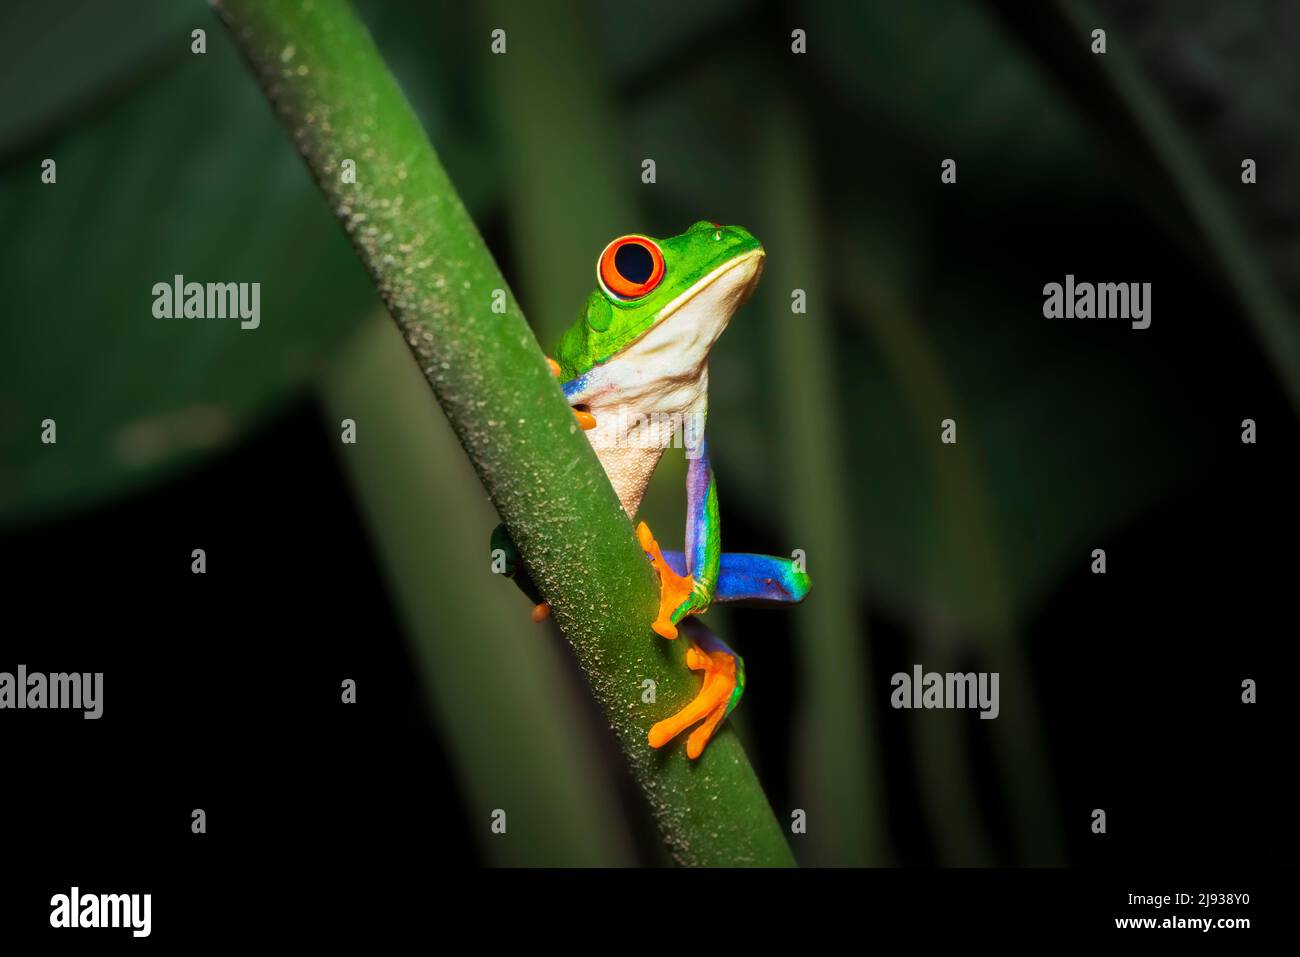 Portrait d'une grenouille d'arbre à yeux rouges ou d'une grenouille de feuille, ou d'une grenouille de feuille gaudy (Agalychnis callidryas) sur une tige de plante tropicale. Grenouilles du Costa Rica. Banque D'Images